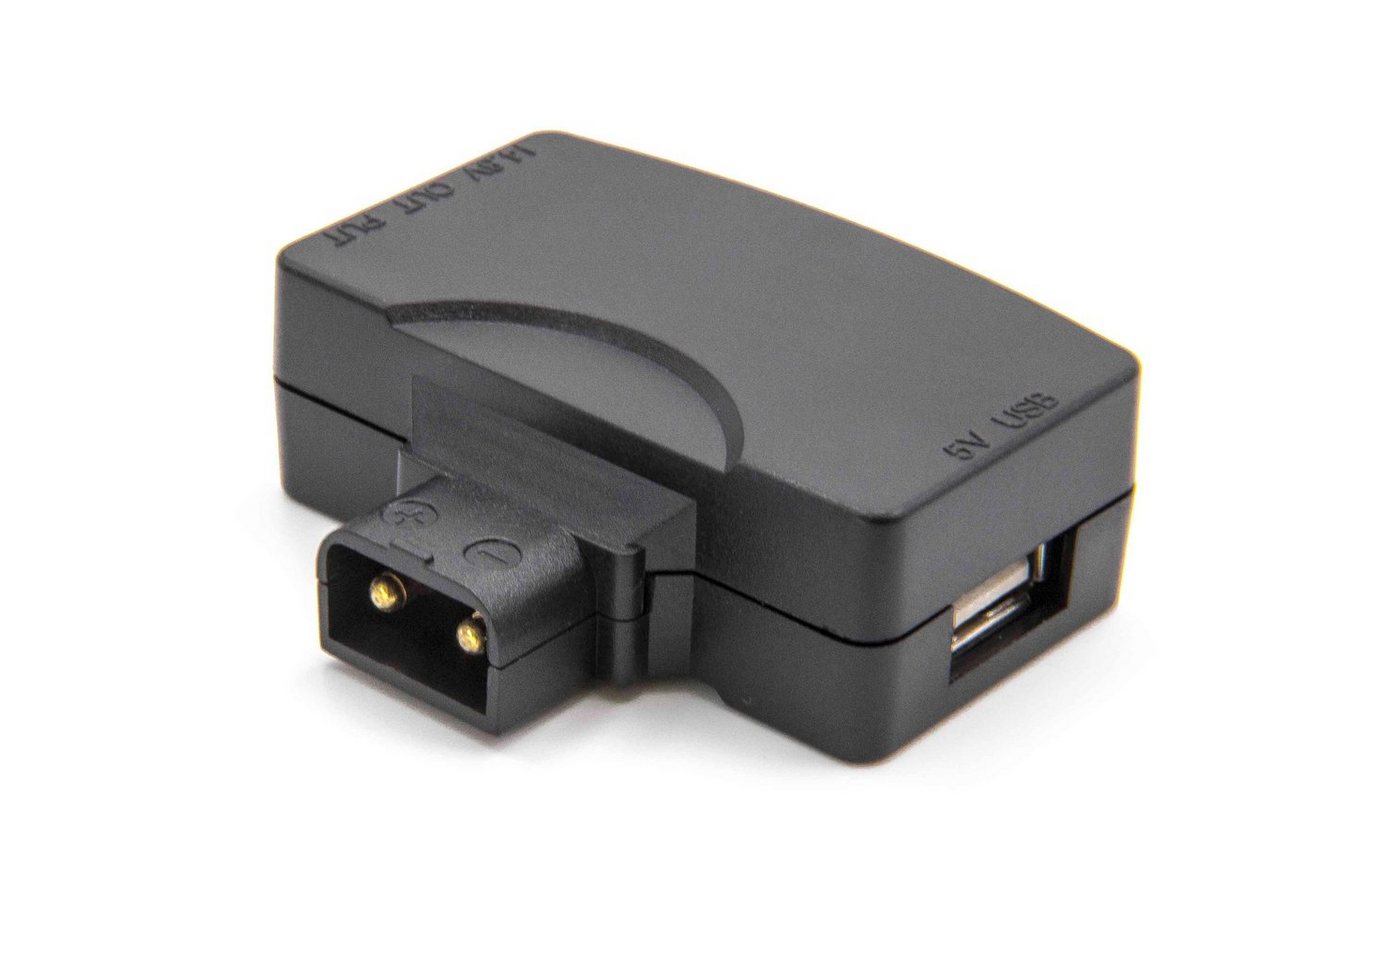 vhbw für Camcorder Digital / Foto DSLR / Kamera USB-Adapter von vhbw